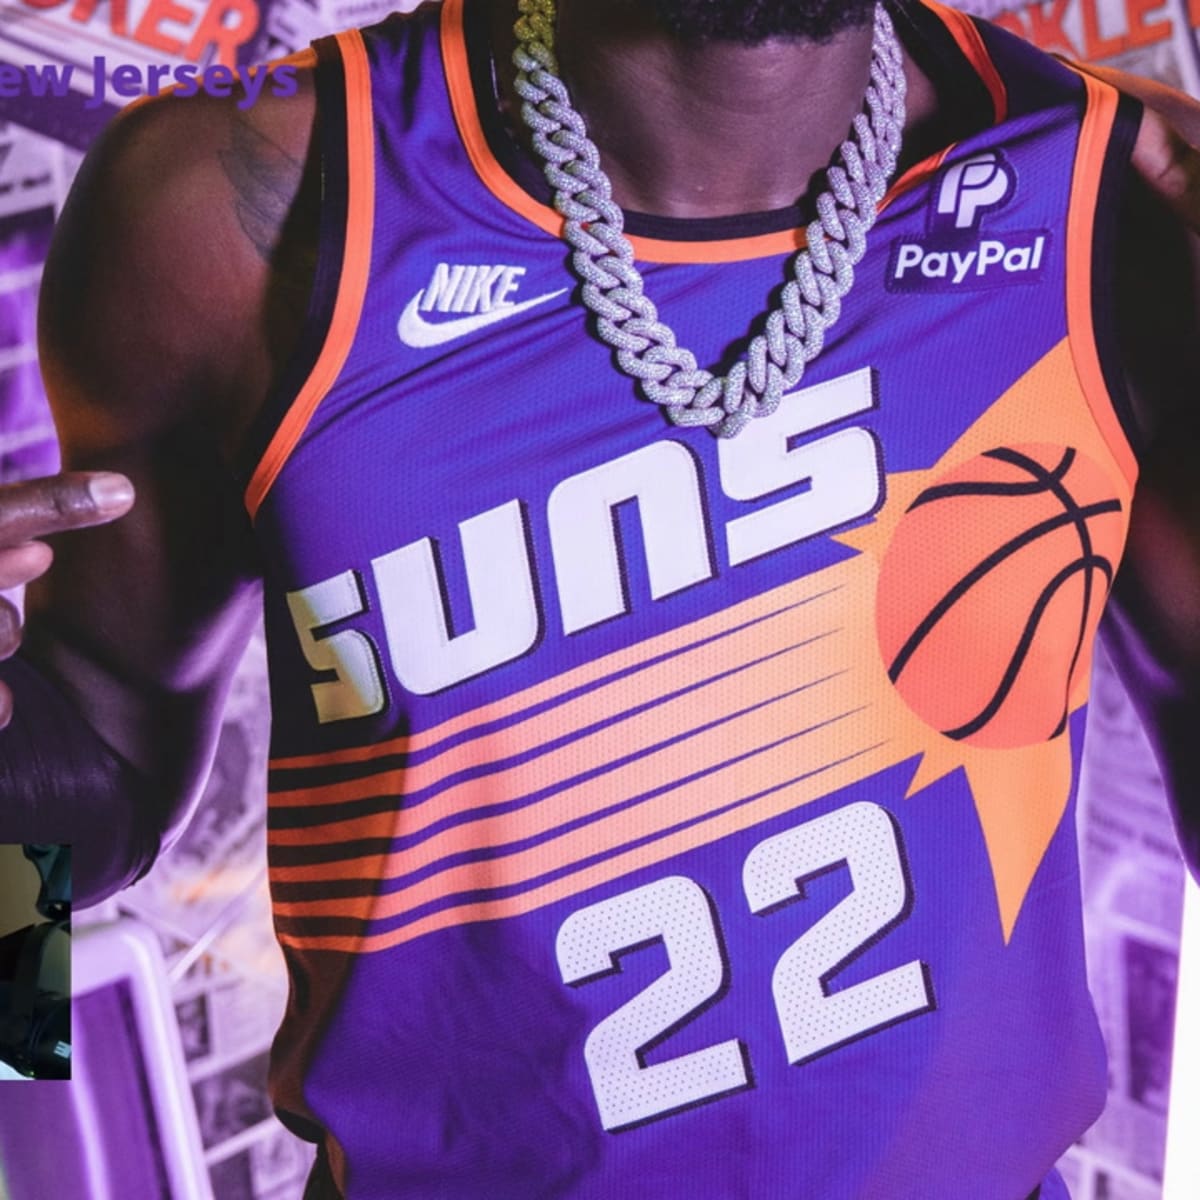 Phoenix Suns unveil classic purple sunburst jerseys for 2022-23